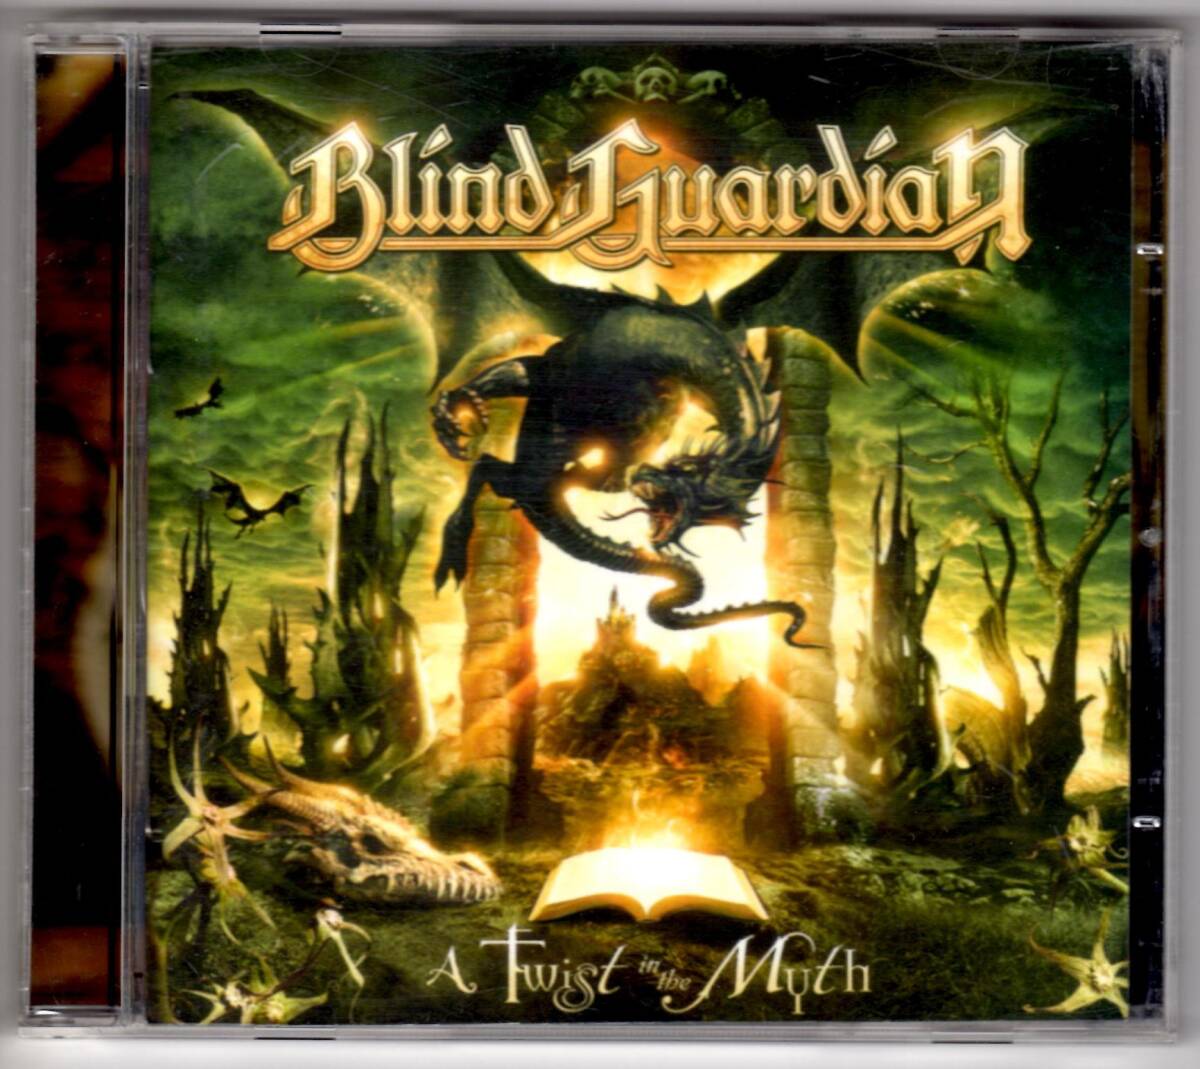 Used CD 輸入盤 ブラインド・ガーディアン BLIND GUARDIAN『ア・トゥイスト・イン・ザ・ミス』- A Twist in the Myth(2006年) 全12曲US盤